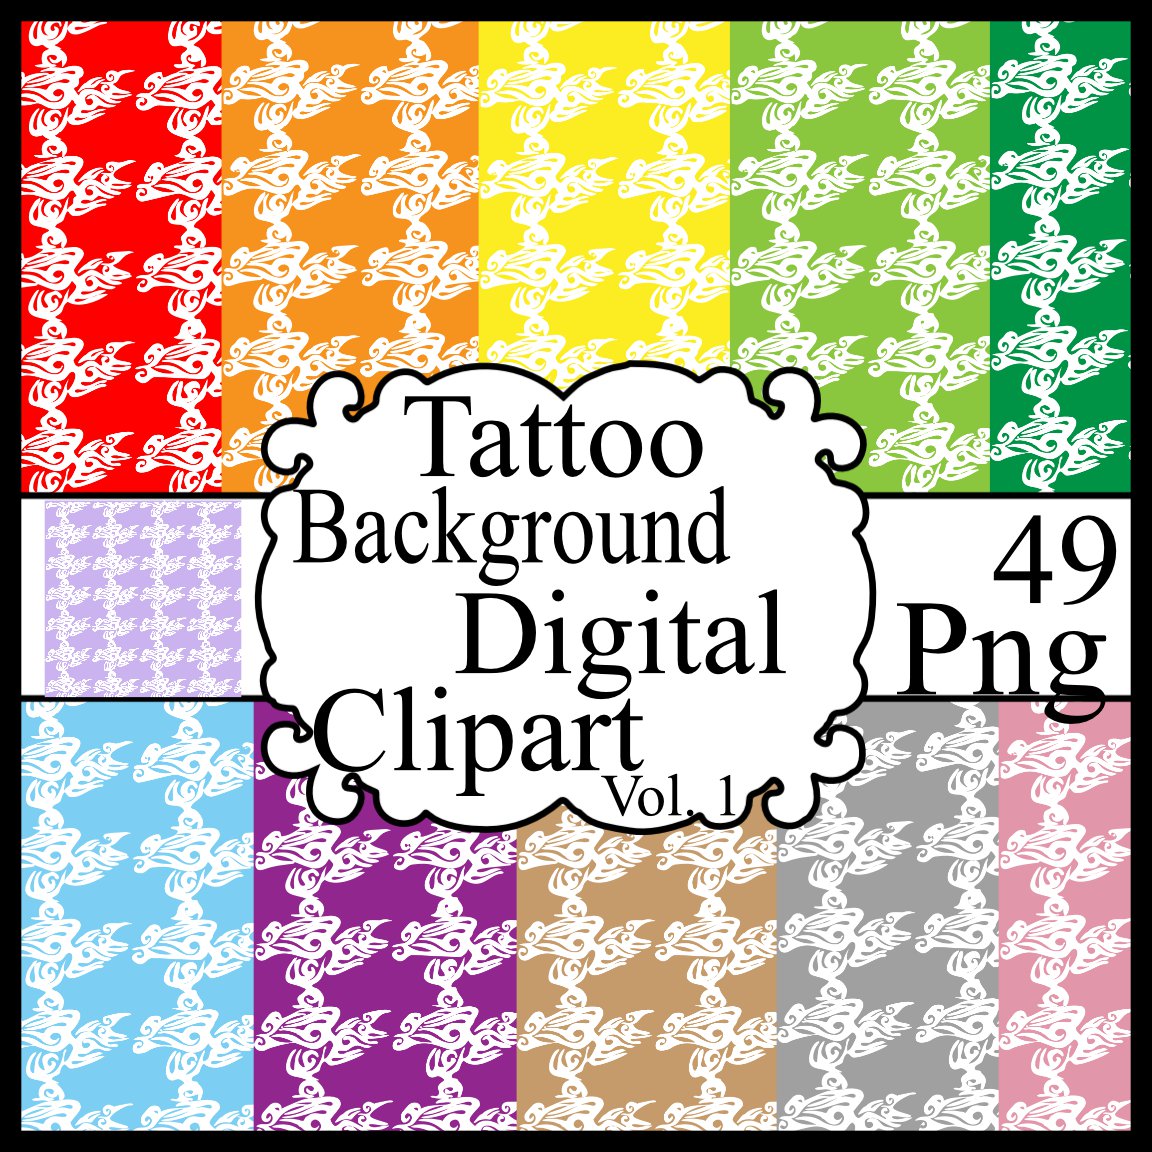 Tattoo Background Digital Clipart Vol. 1